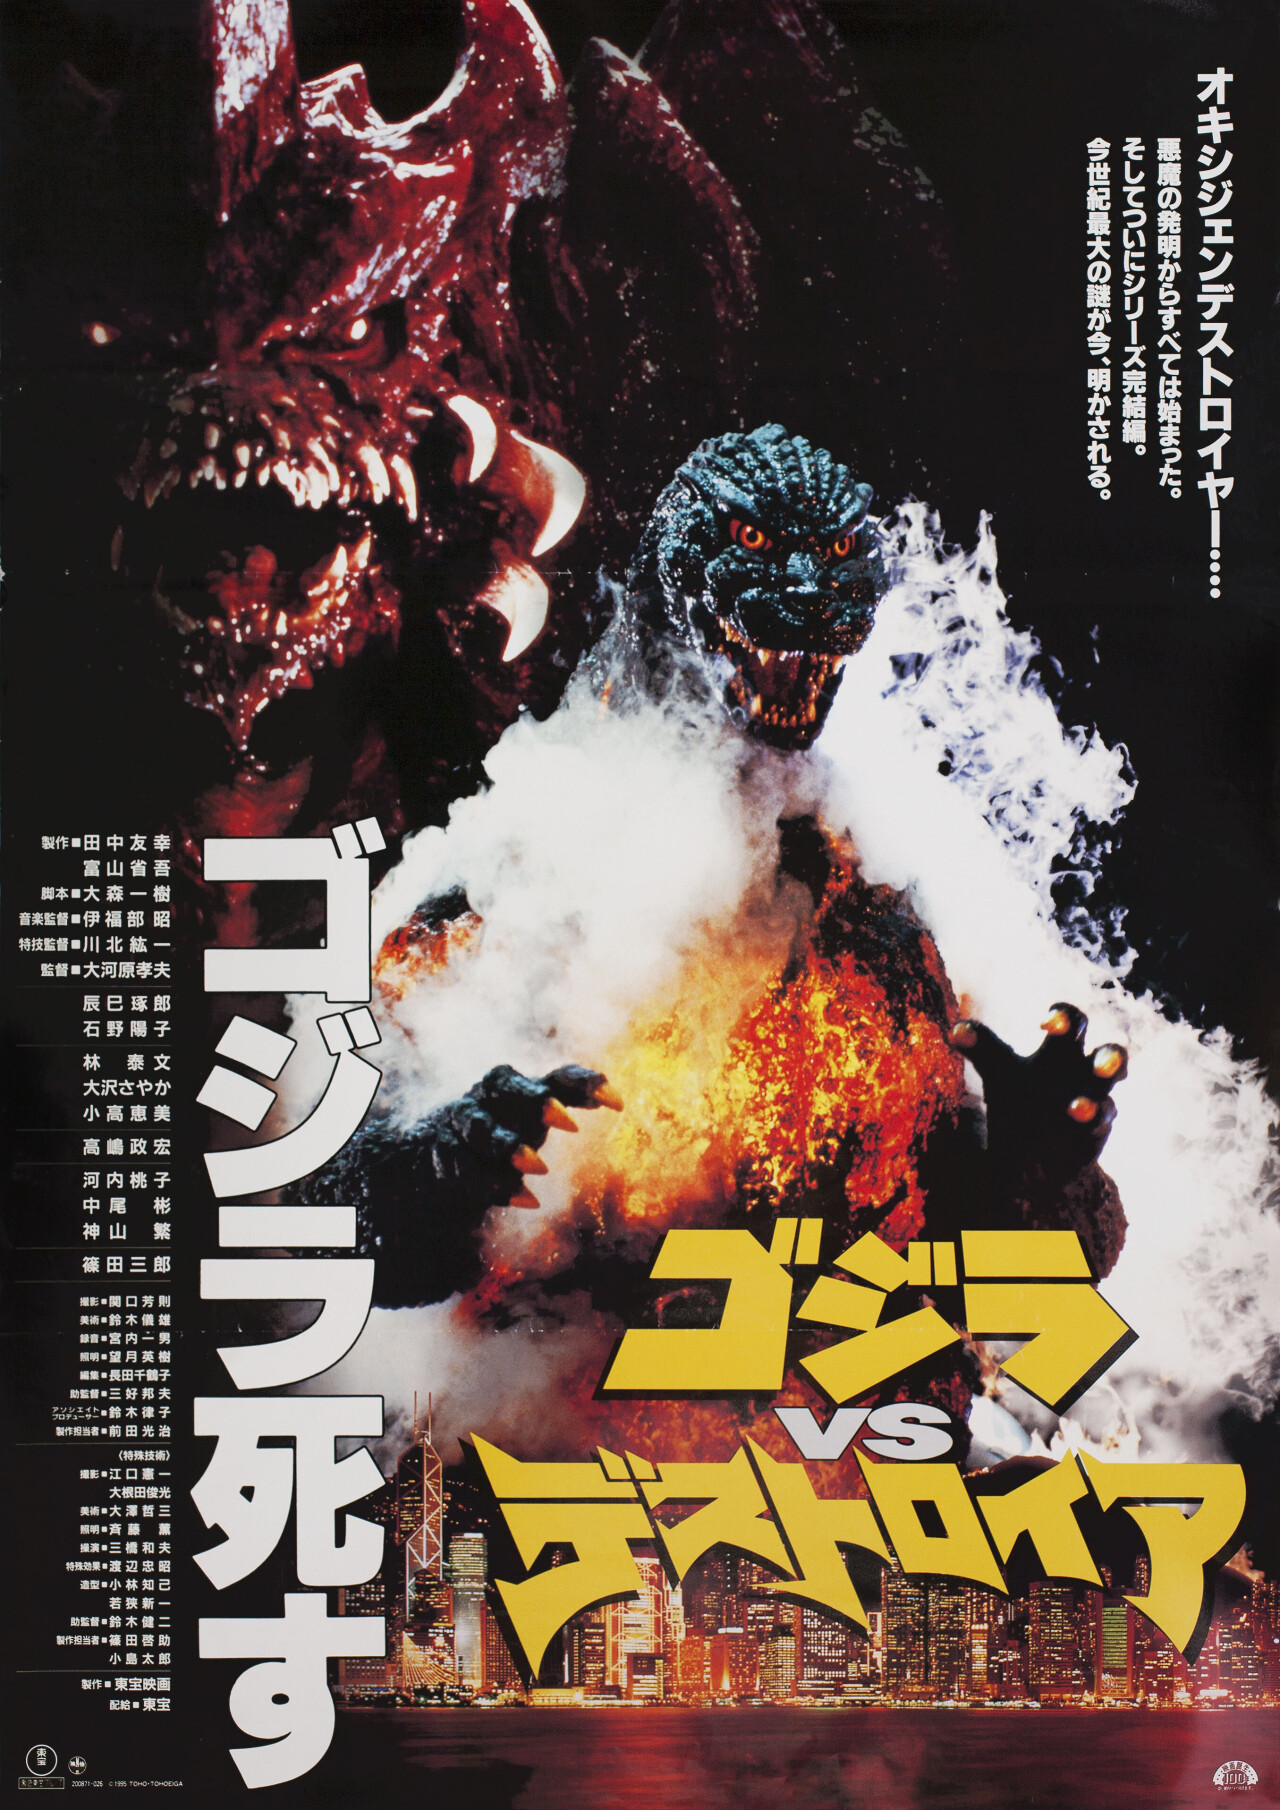 Годзилла против Разрушителя (Godzilla vs. Destroyah, 1995), режиссёр Такао Окавара, японский постер к фильму (монстры, 1995 год)